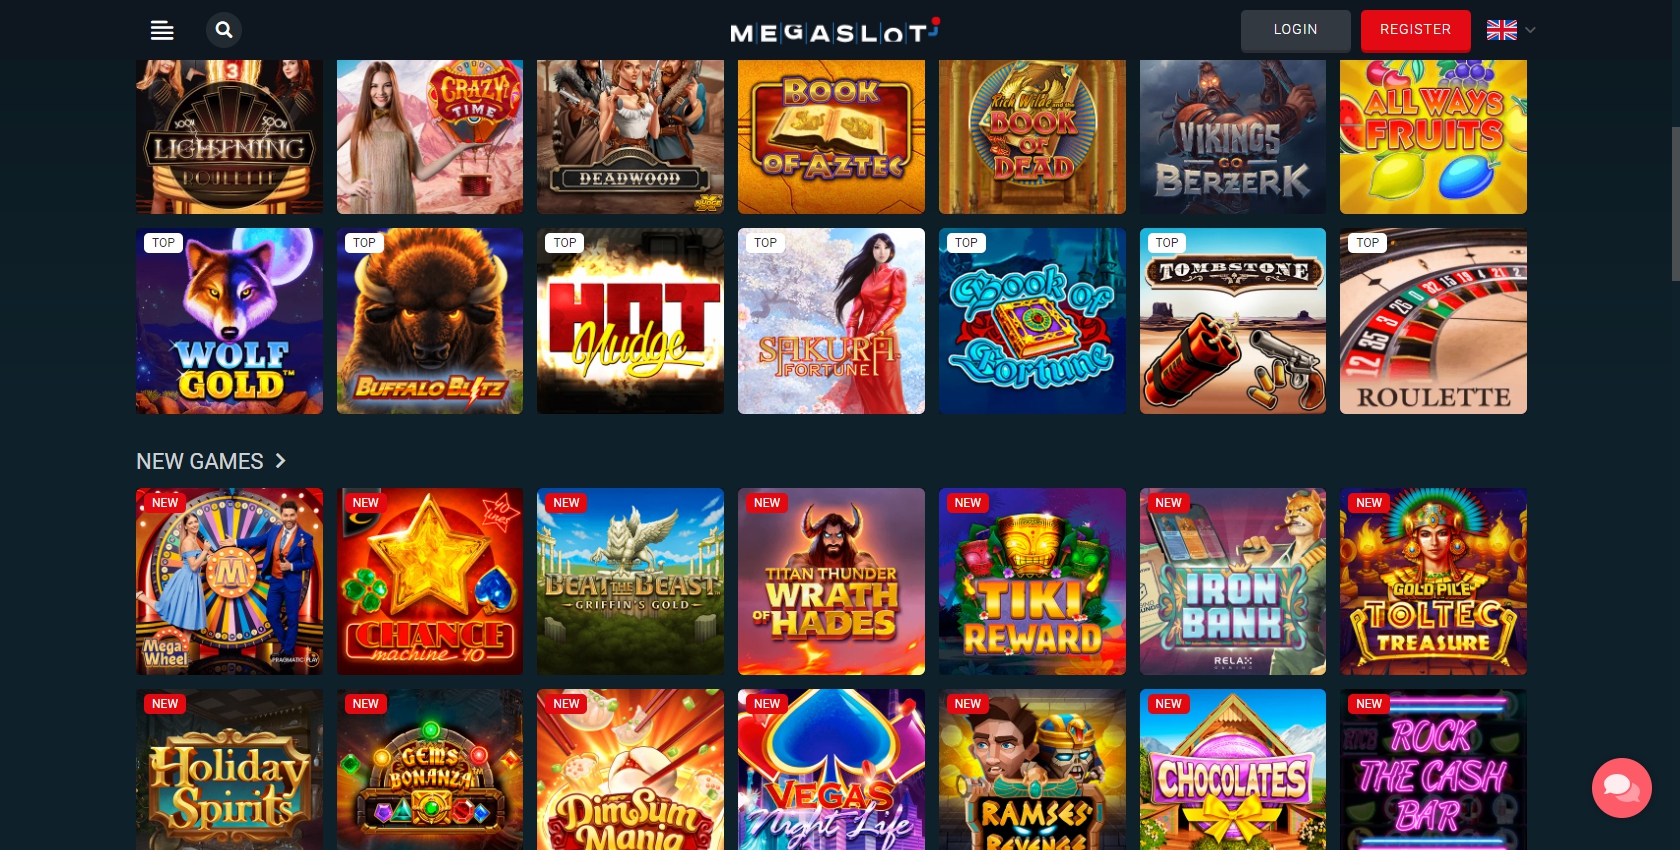 Megaslot Casino Games